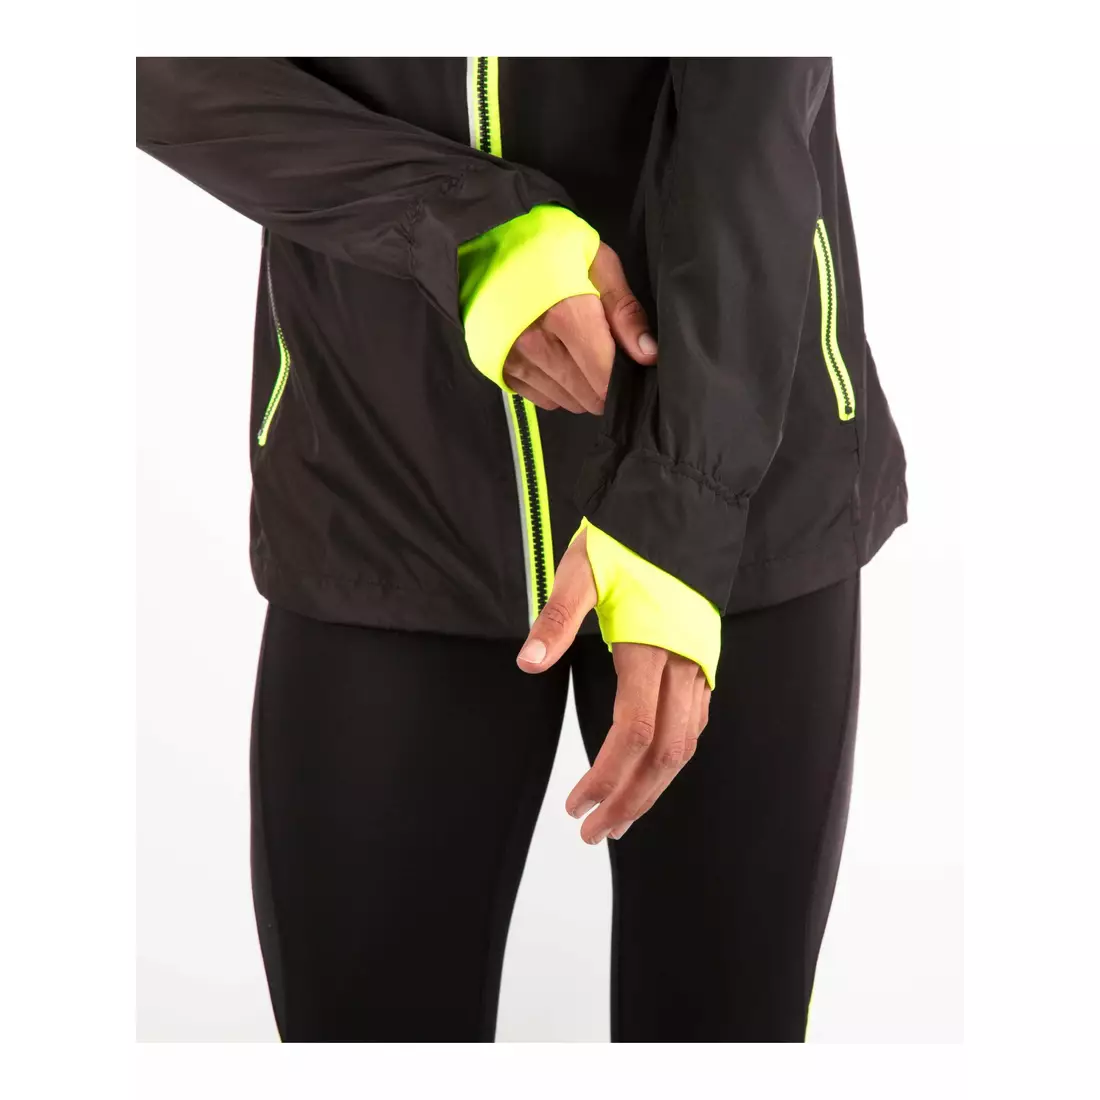 Rogelli REFLEX jachetă de alergare pentru bărbați, reflectorizantă 830.839